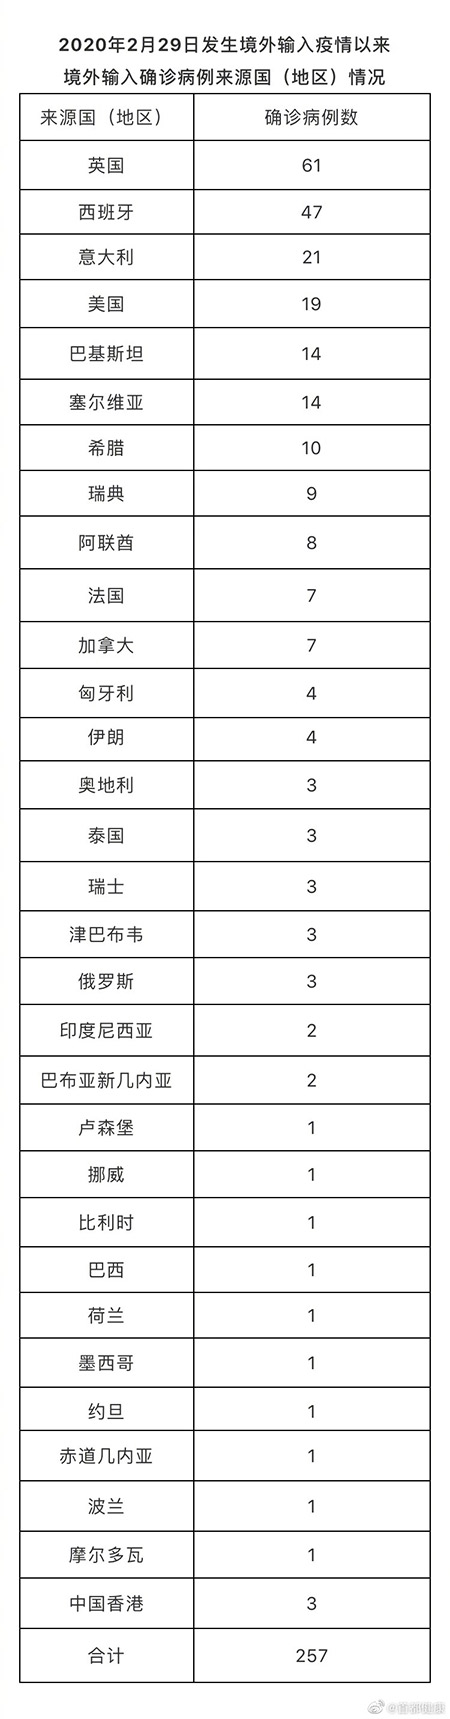 北京7月19日新增1例境外输入无症状感染者转确诊病例